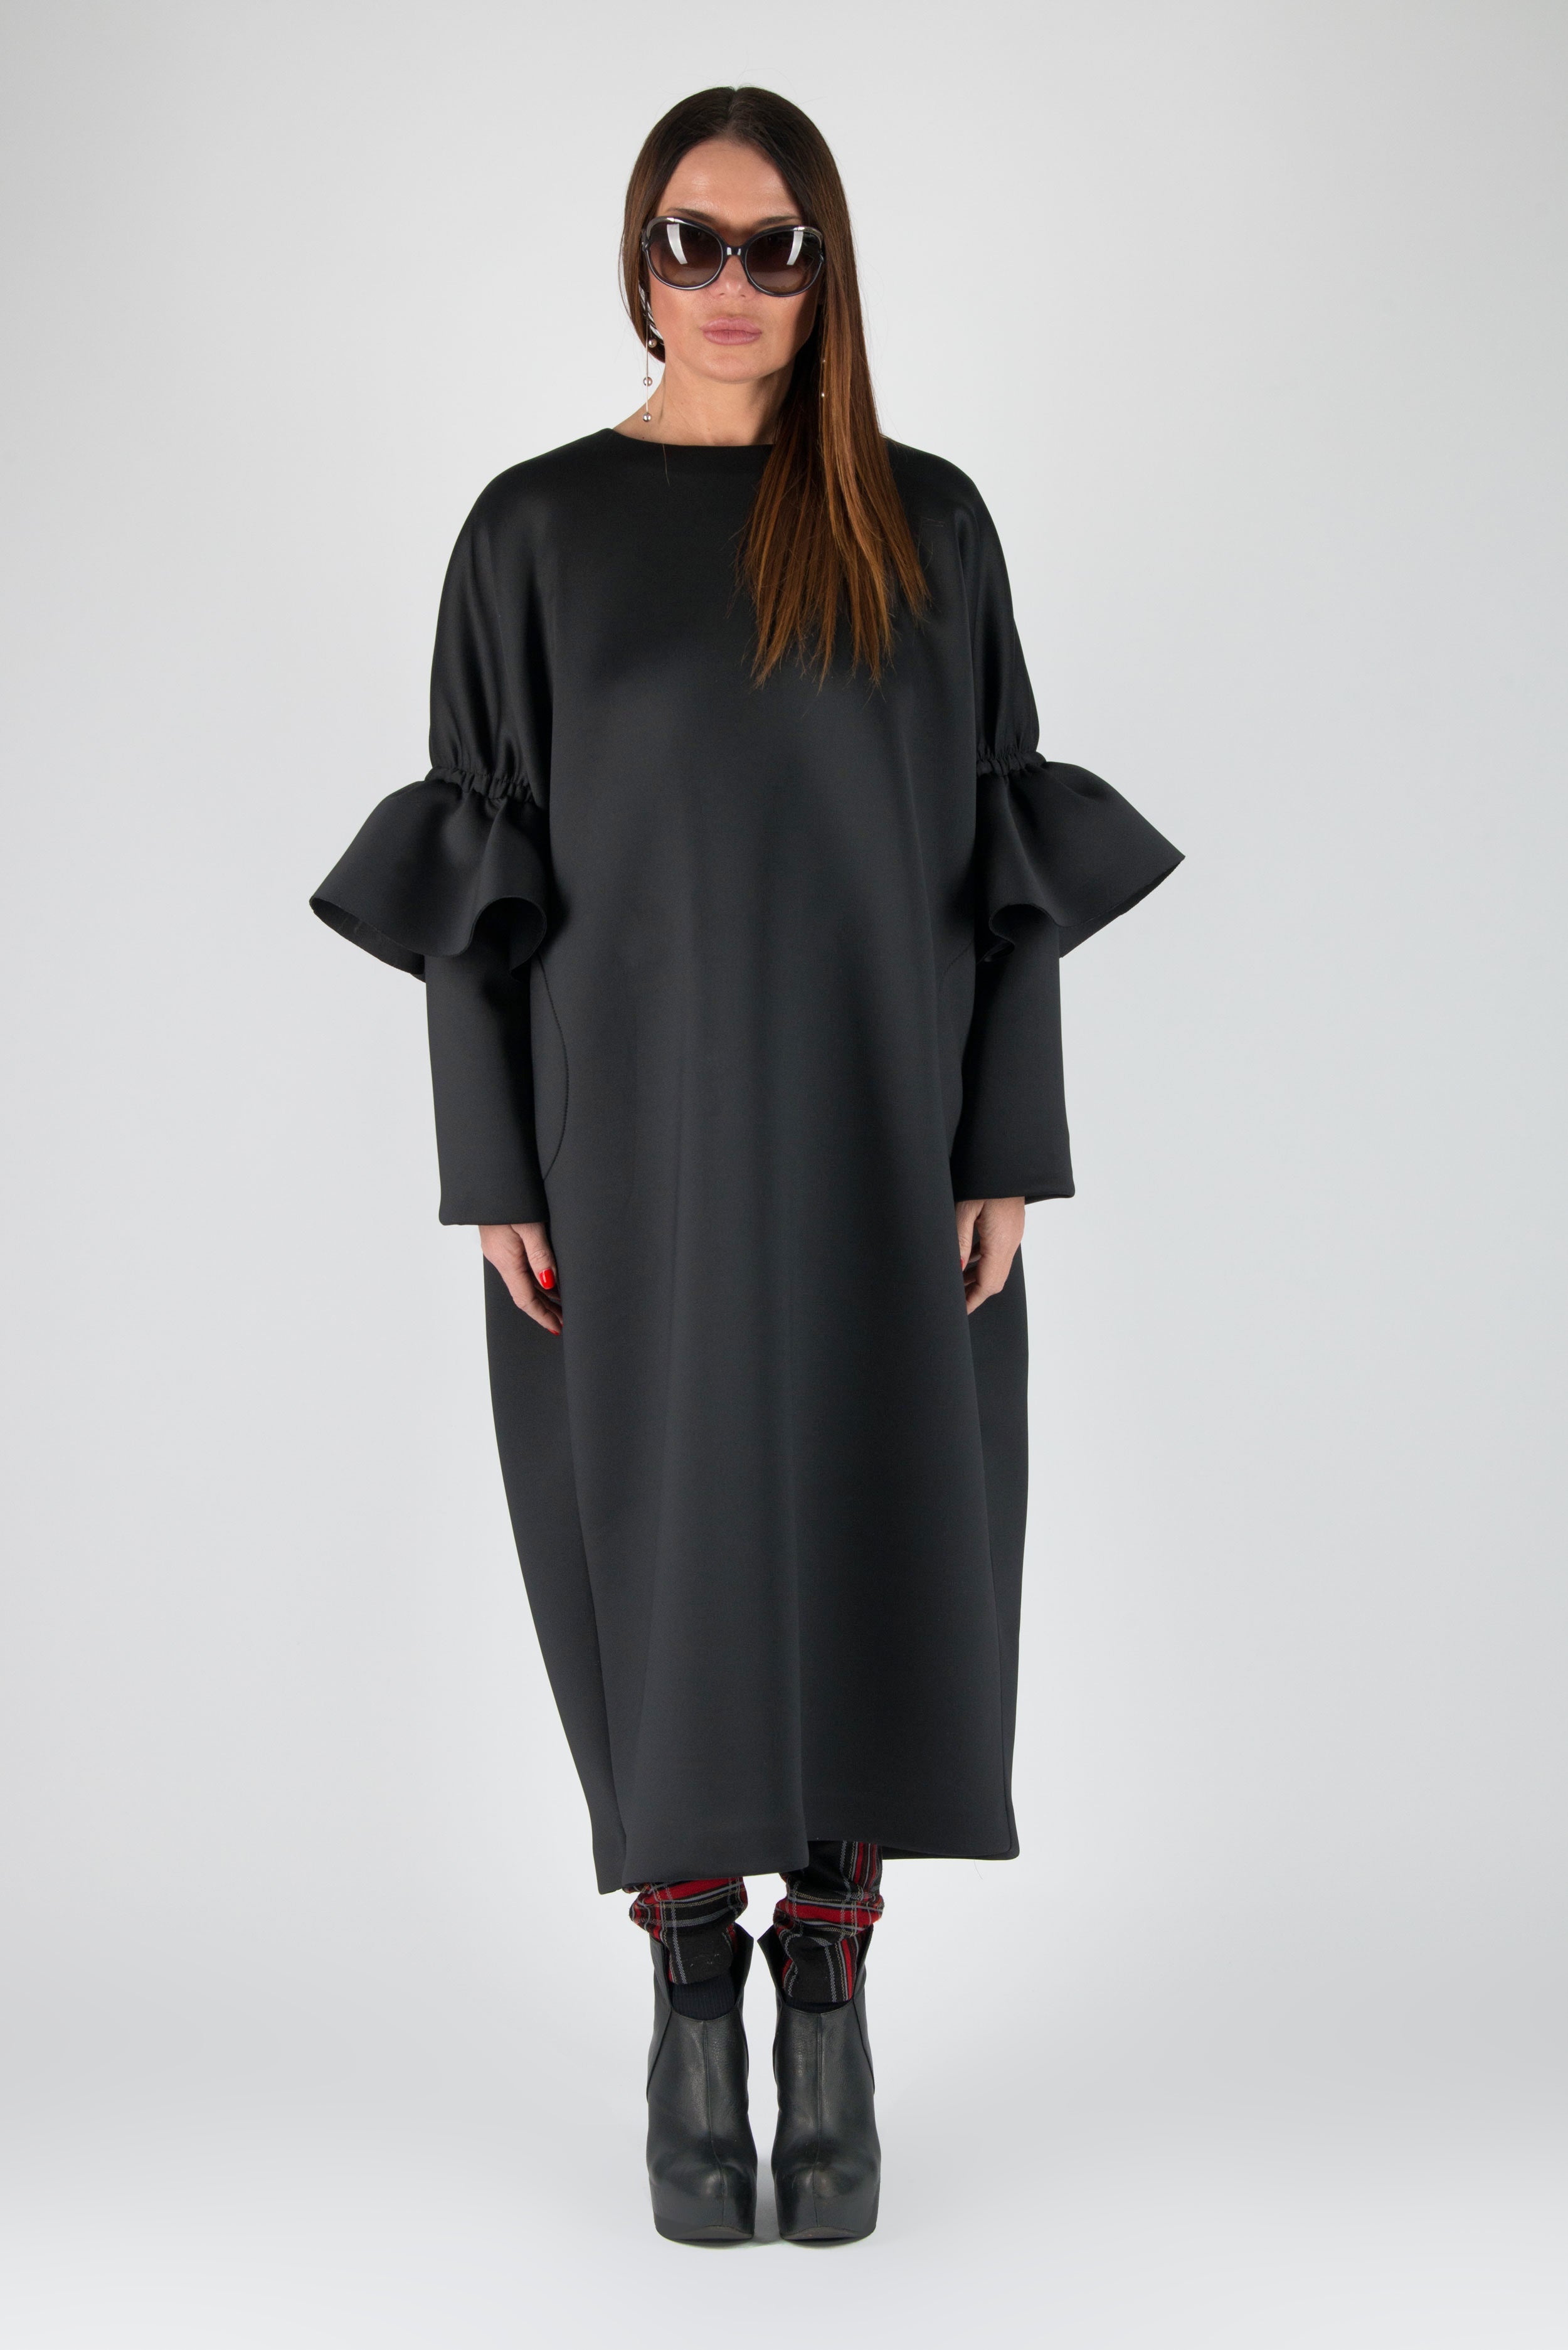 Long Black Winter Neoprene Dress, Dresses & Maxi Dresses